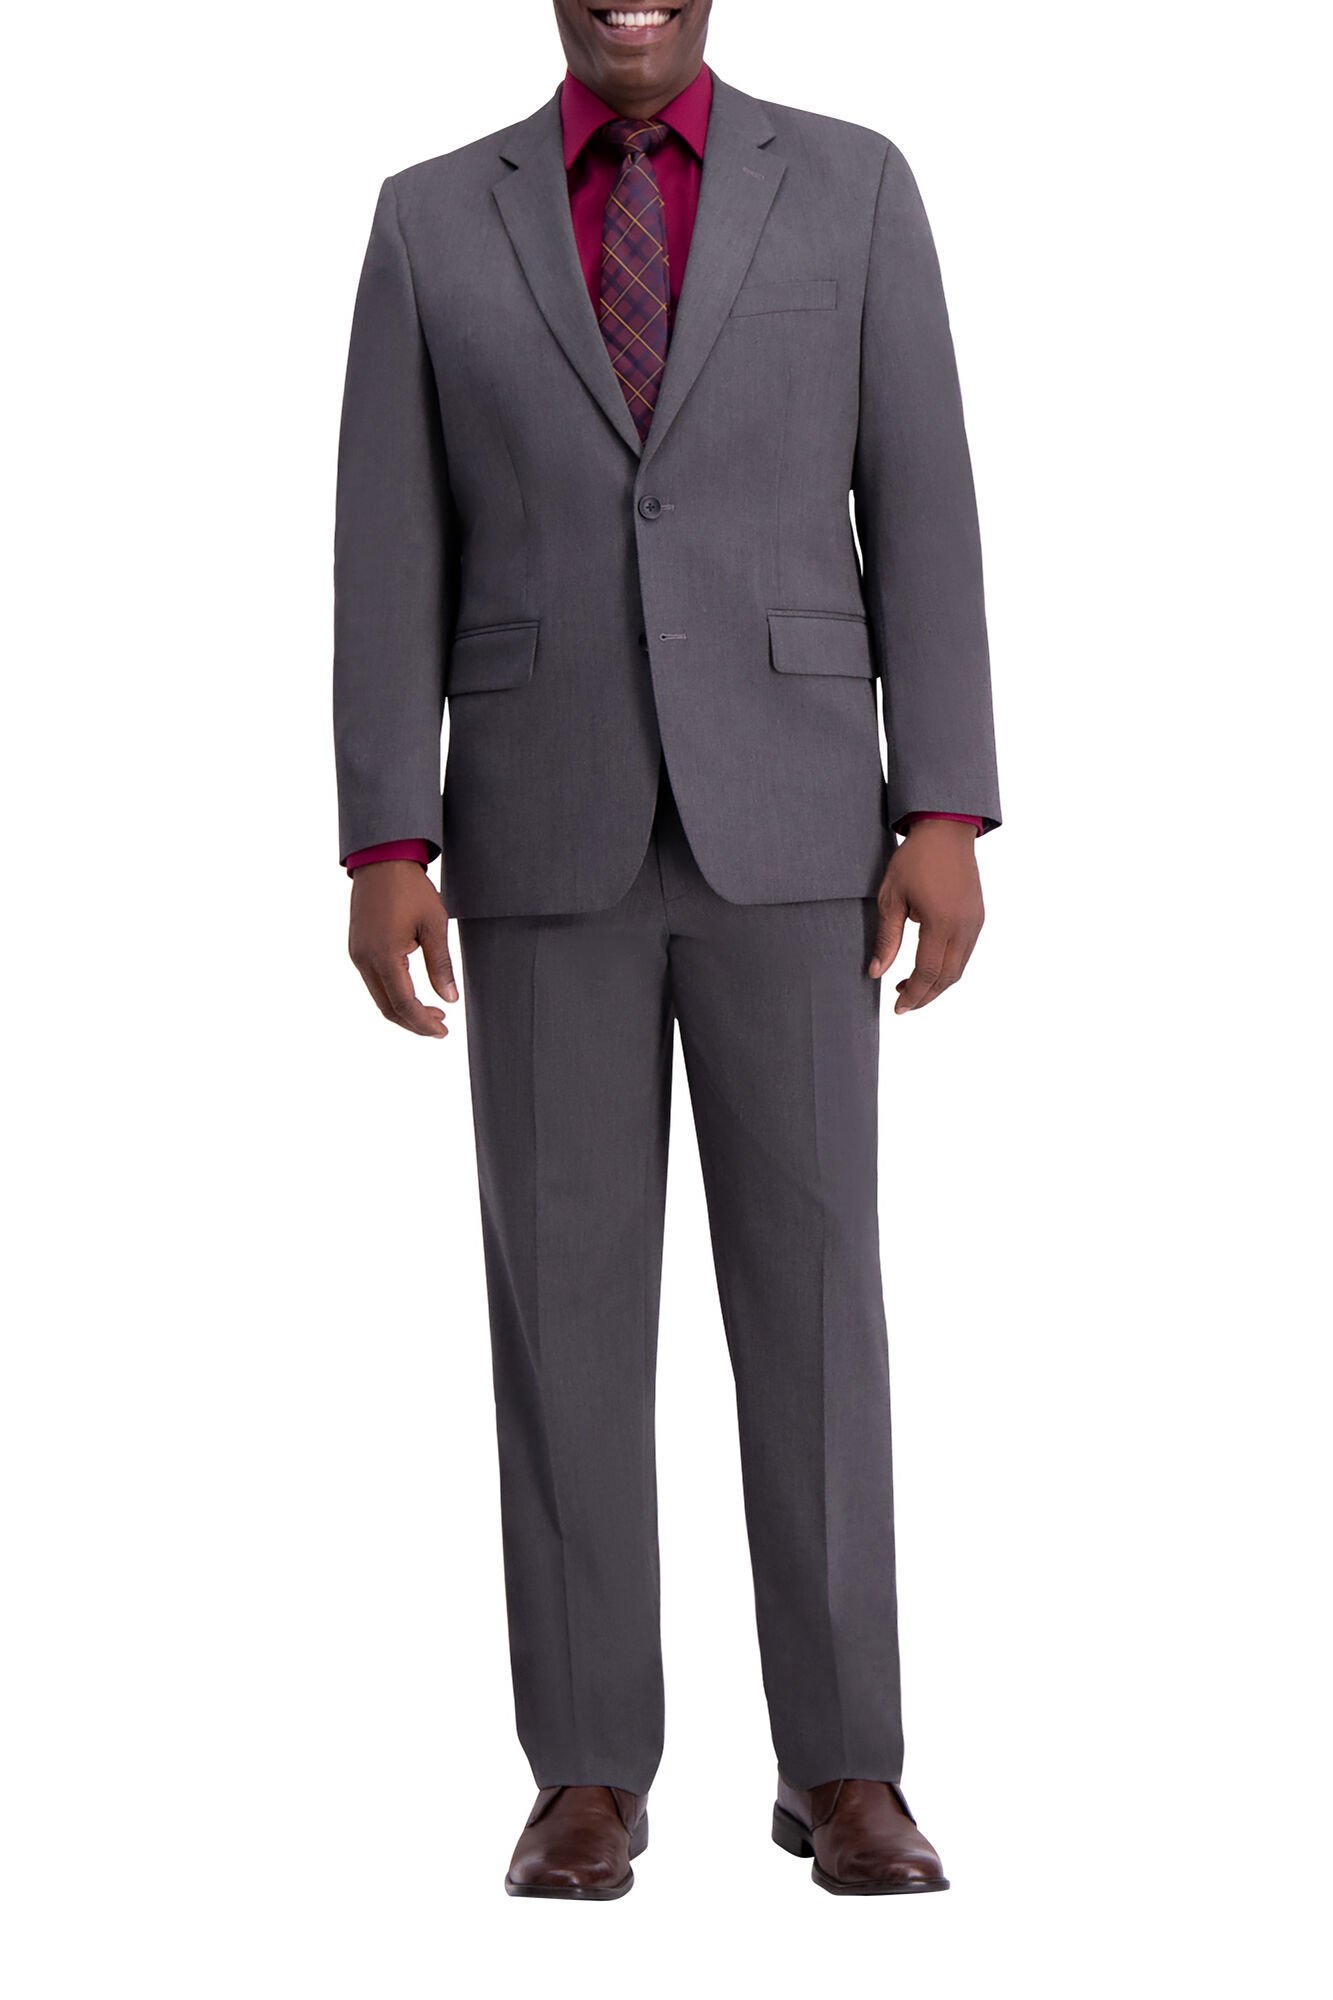 J.M. Haggar Premium Stretch Suit Coat -Diamond Weave Dark Grey (HZ00158 Clothing Suits) photo